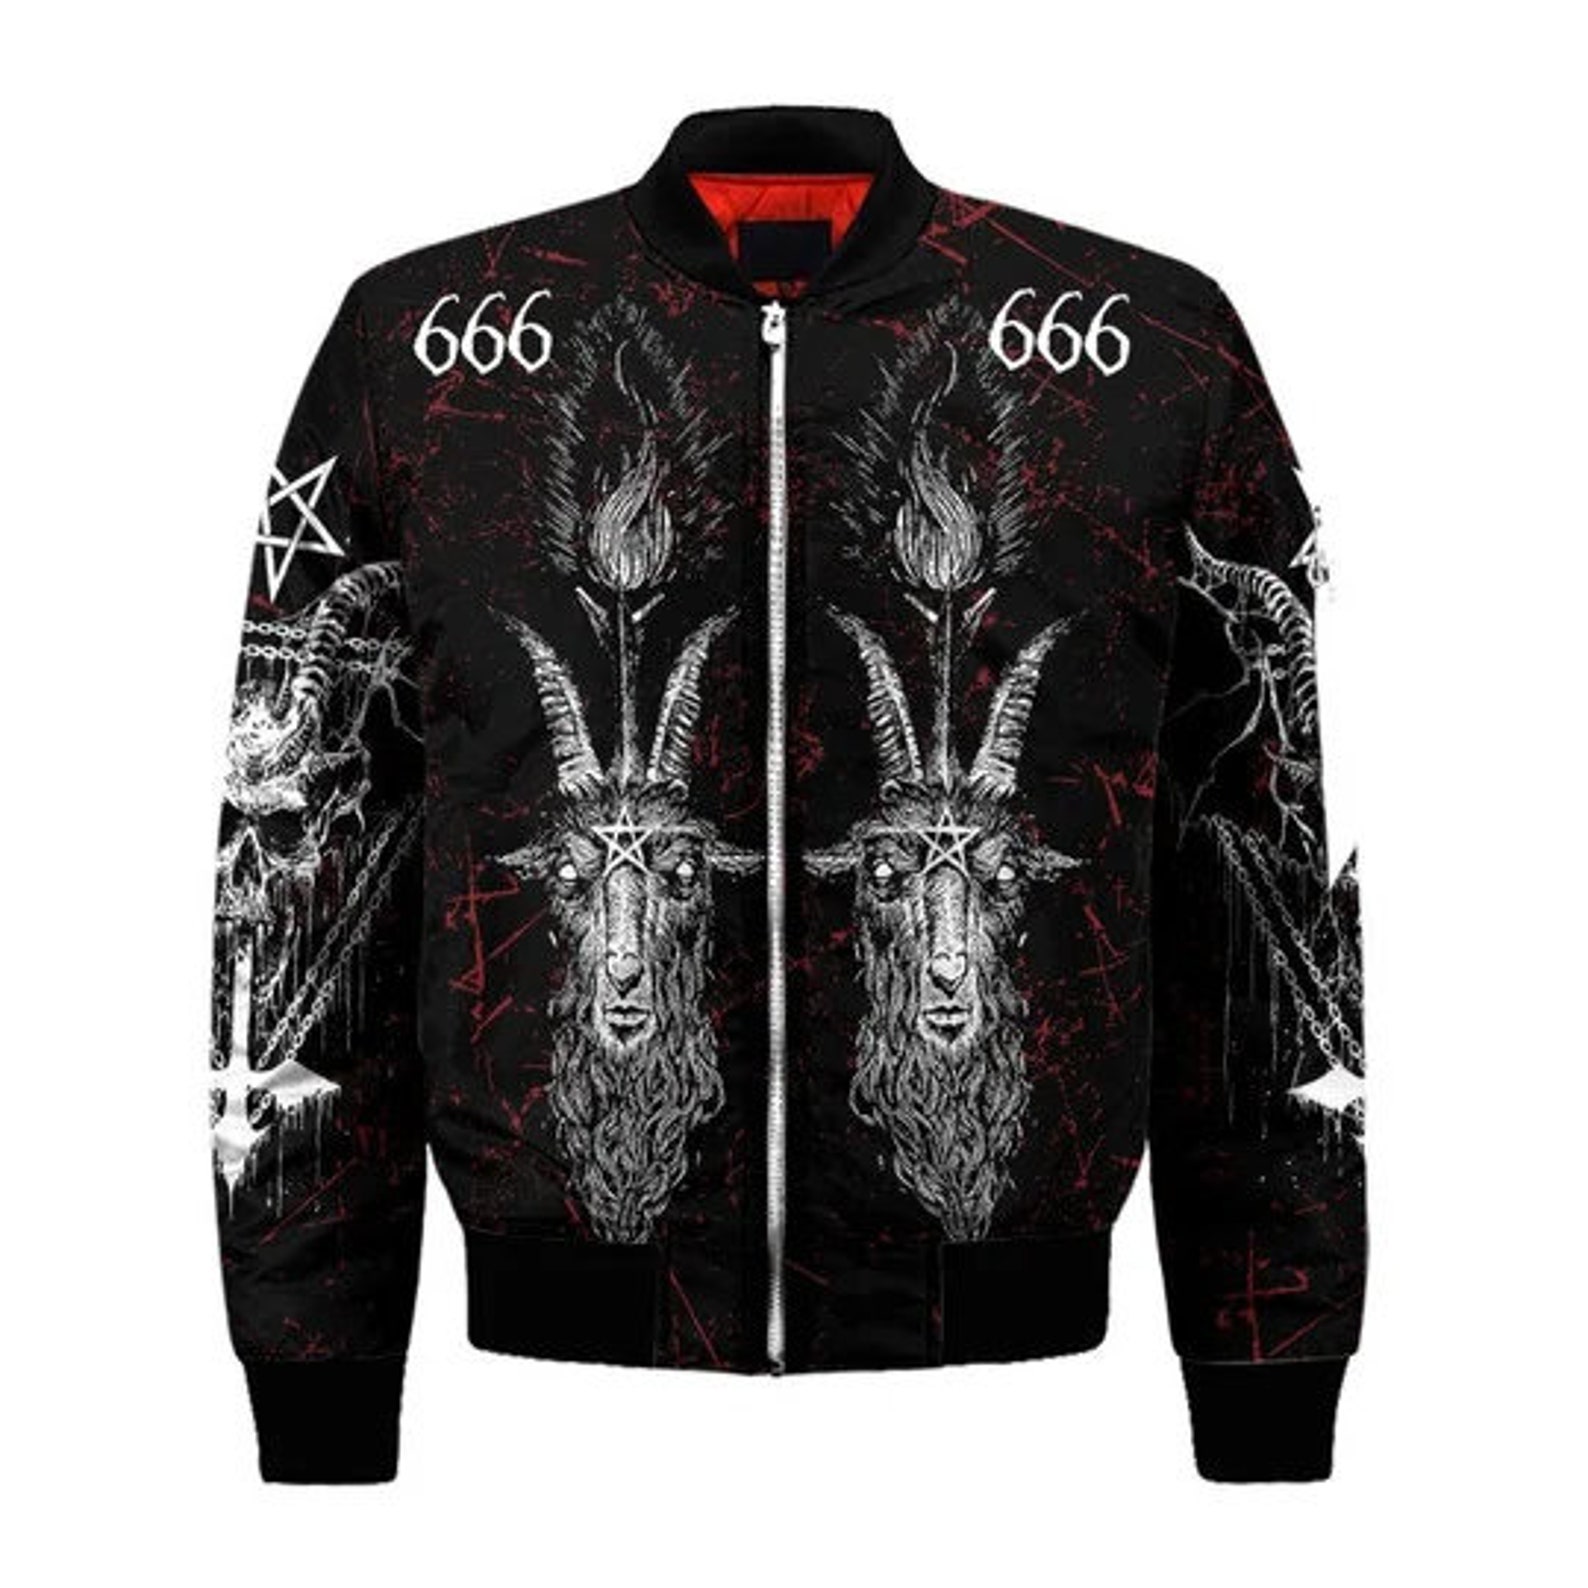 666 Satanic Bomber Jacket | Etsy